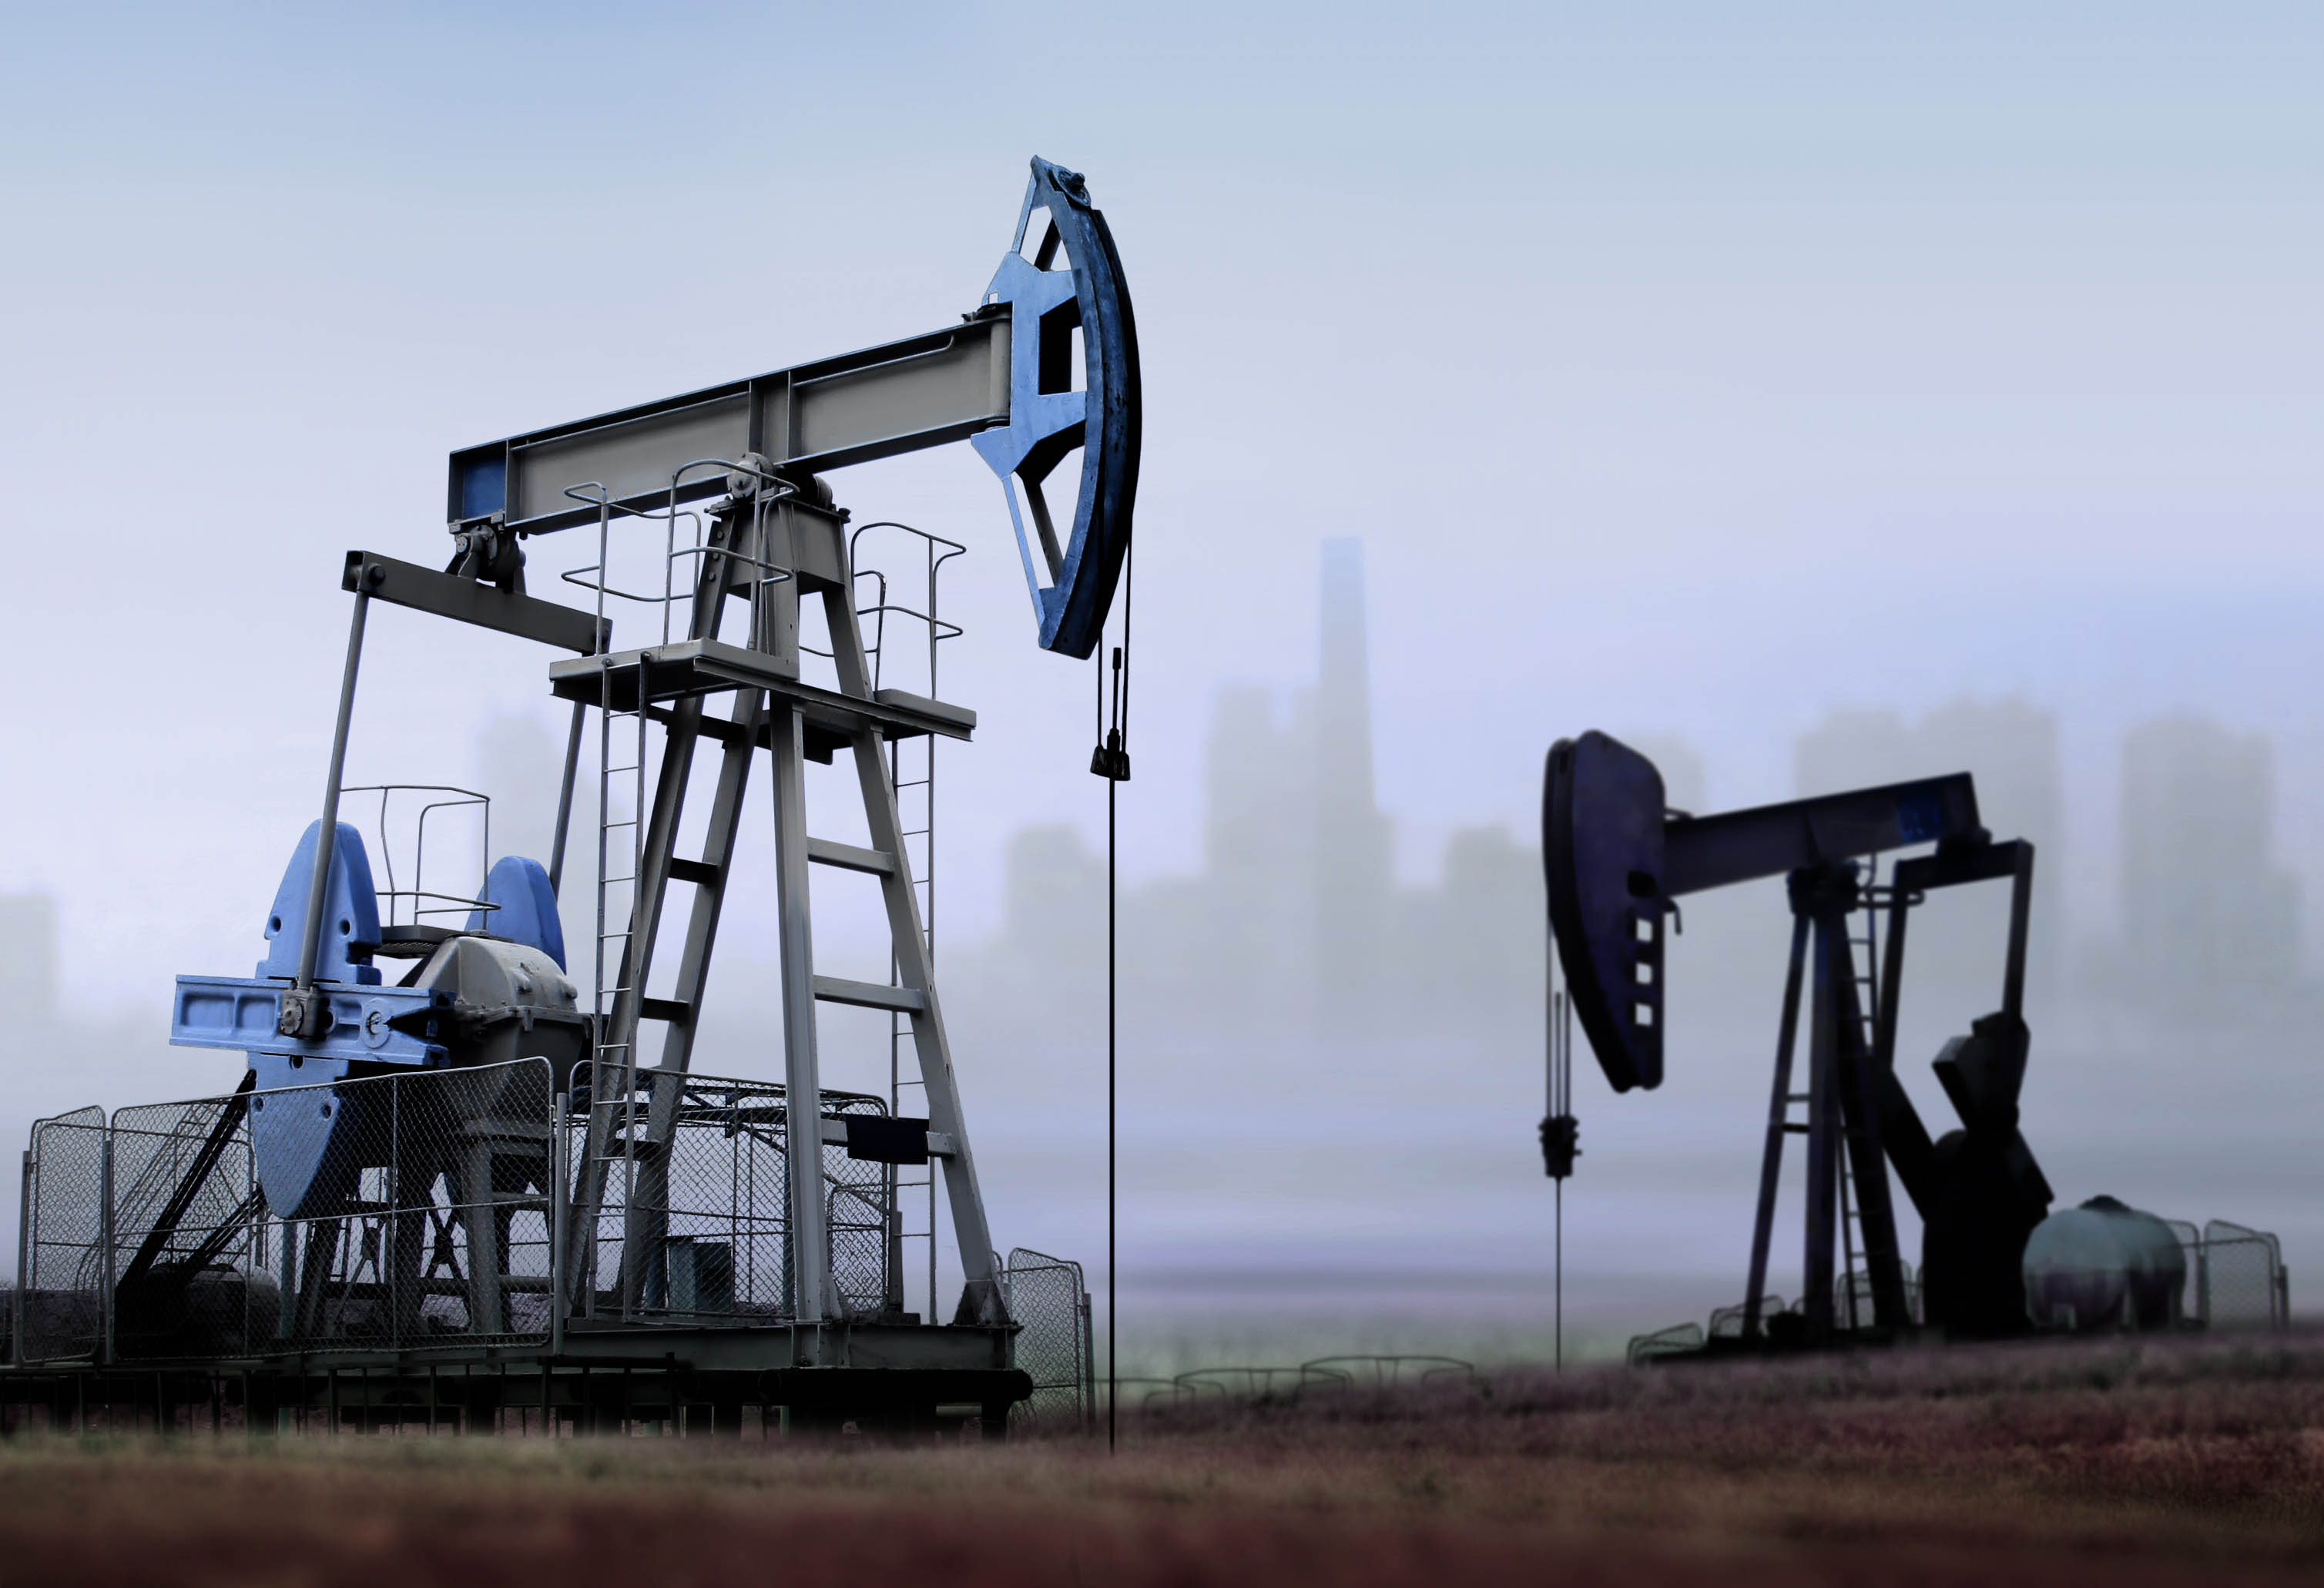 Le pétrole : qu'est-ce que c'est ?